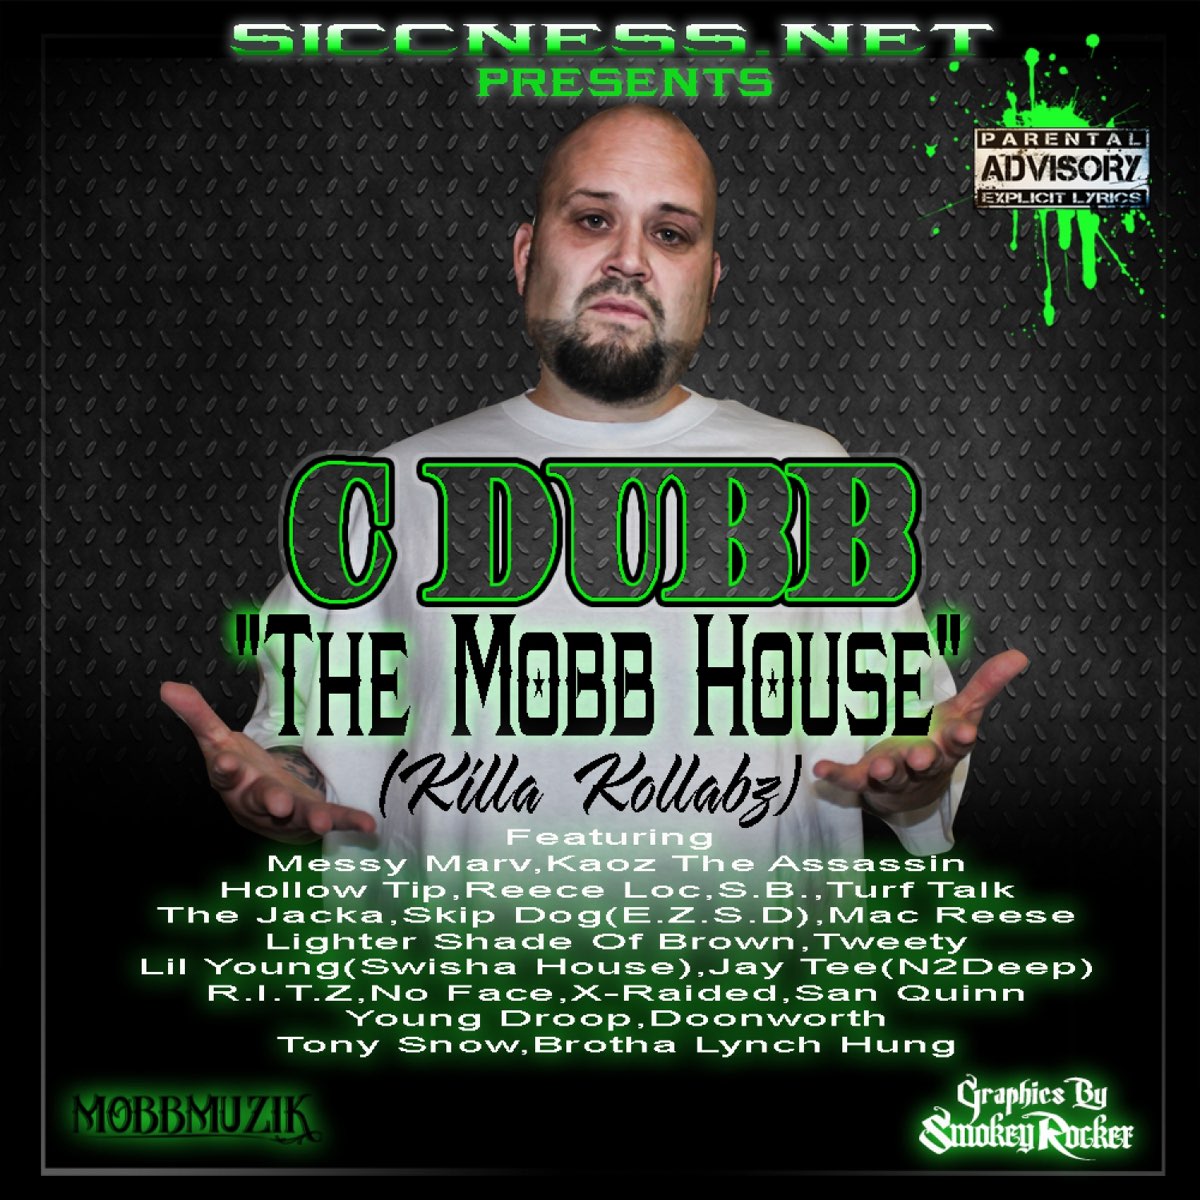 C-Dubb - The Mobb House (Killa Kollabz)